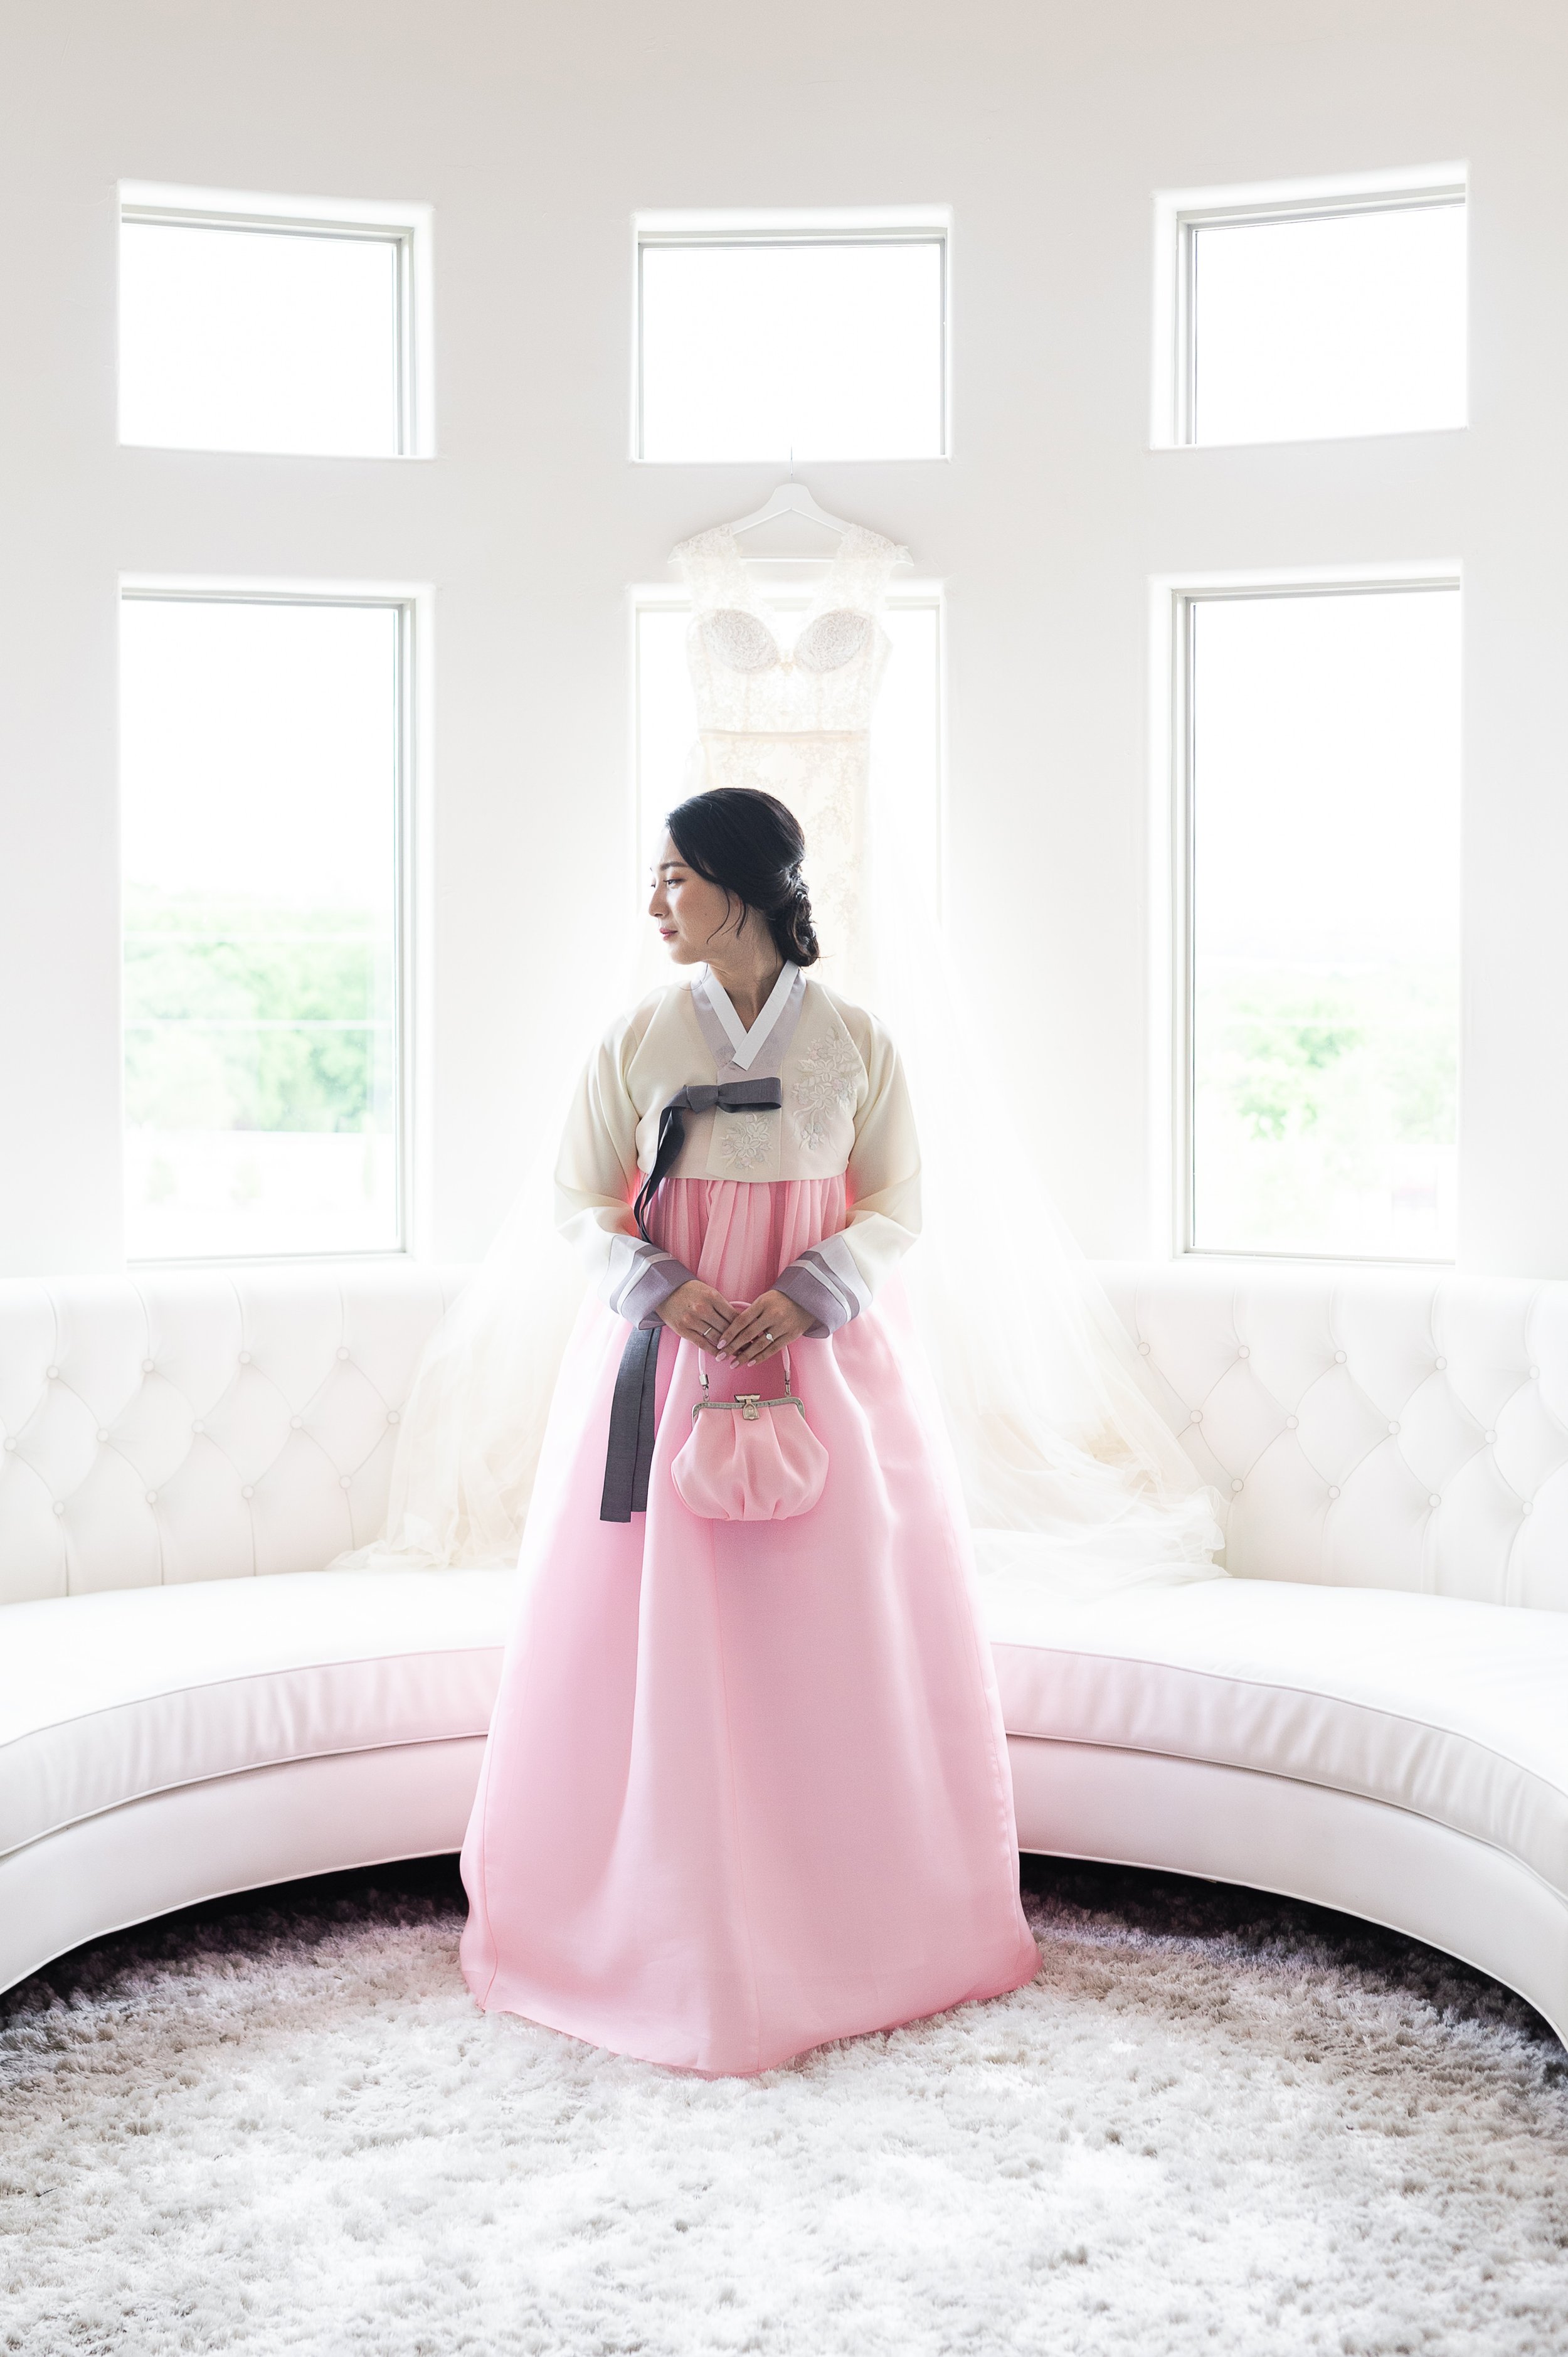 www.knottinghillplace.com-wedding-venue-bridal-suite-chinese-culture-korean-bride.jpg